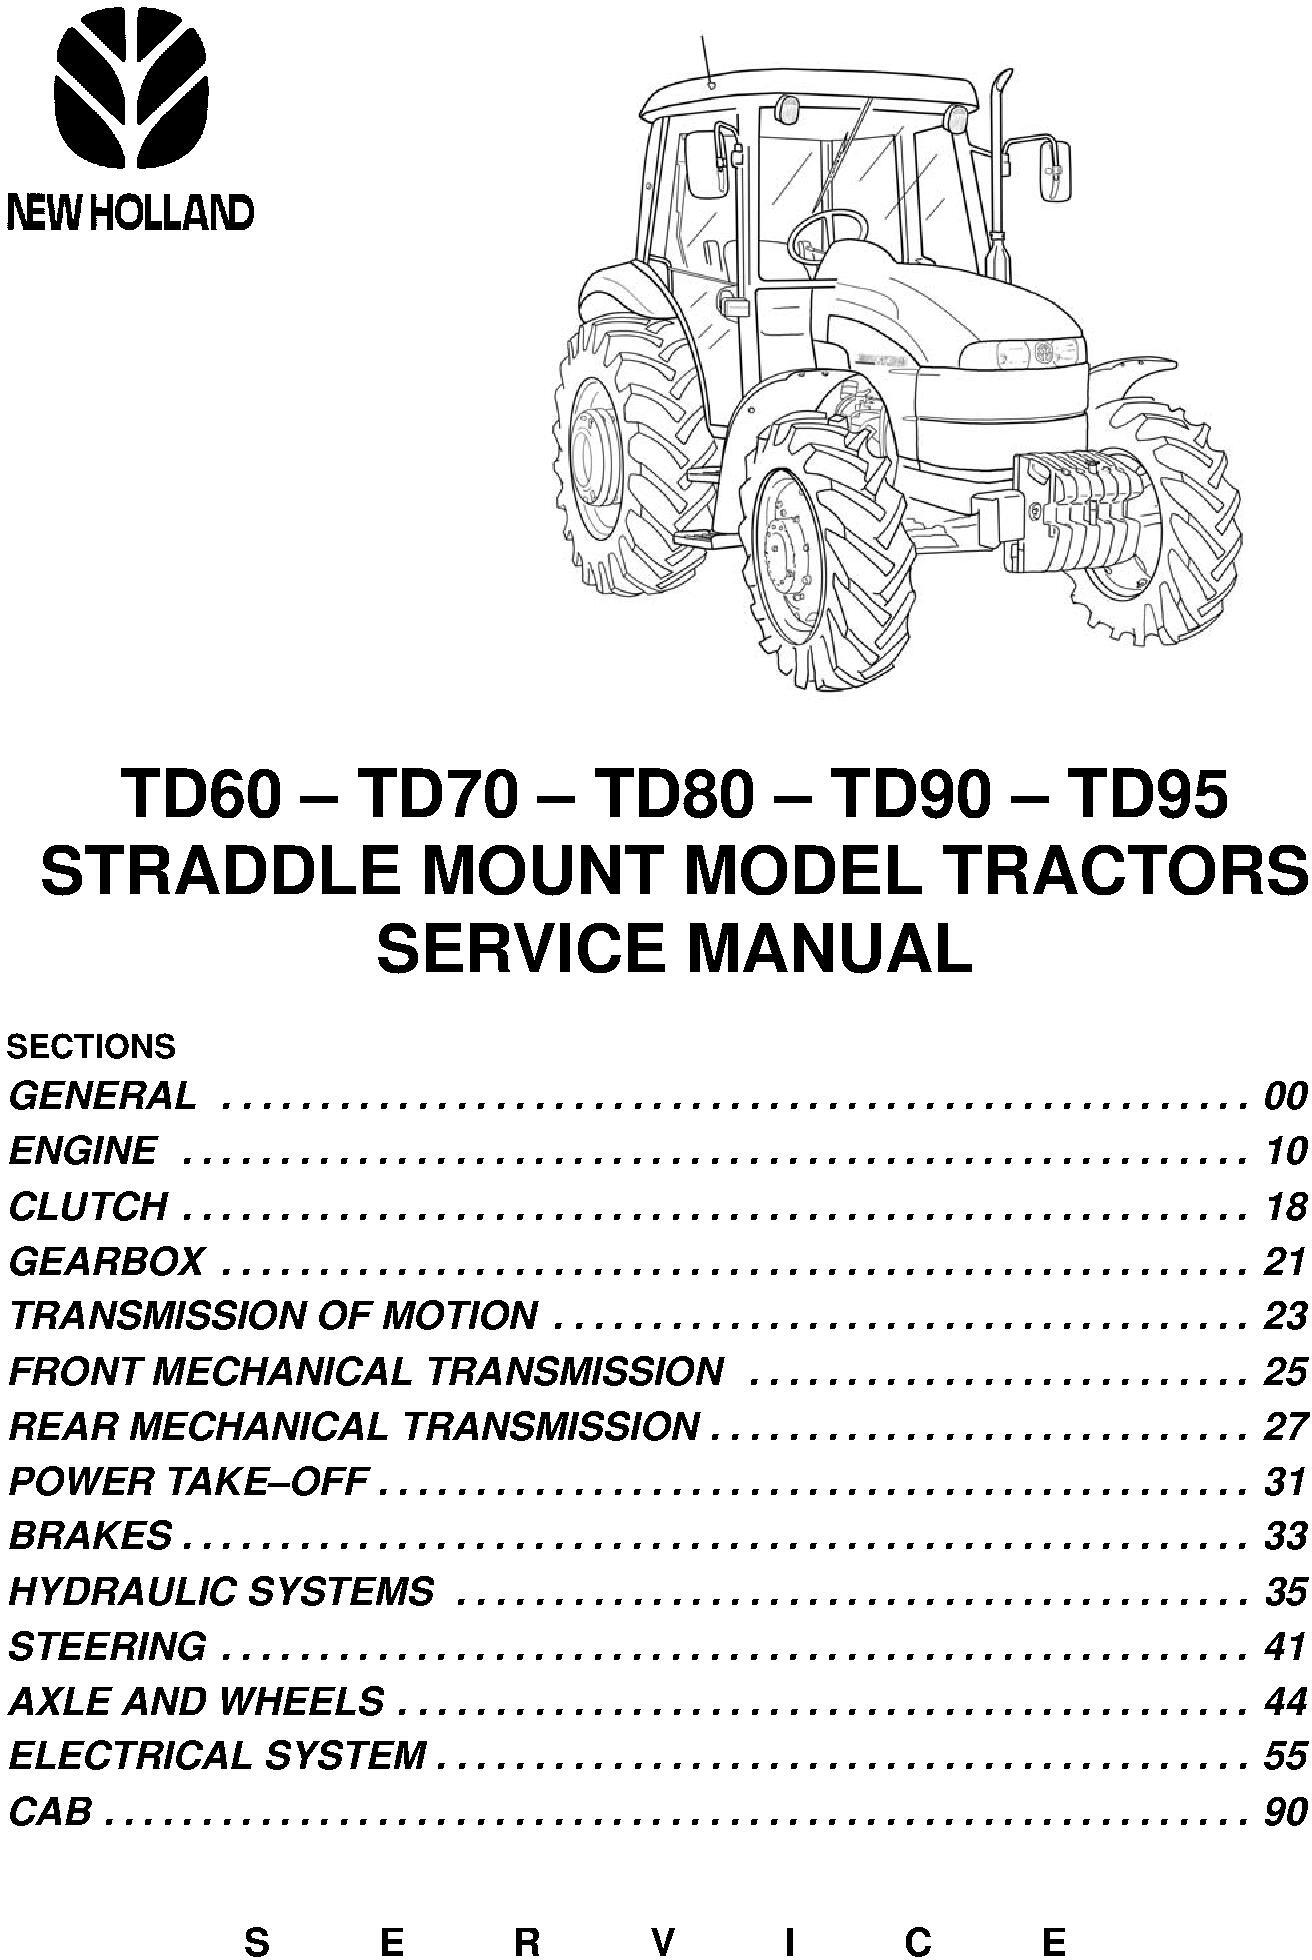 New Holland TD60, TD70, TD80, TD90, TD95 Straddle Mount Model Tractors Service Manual - 19565